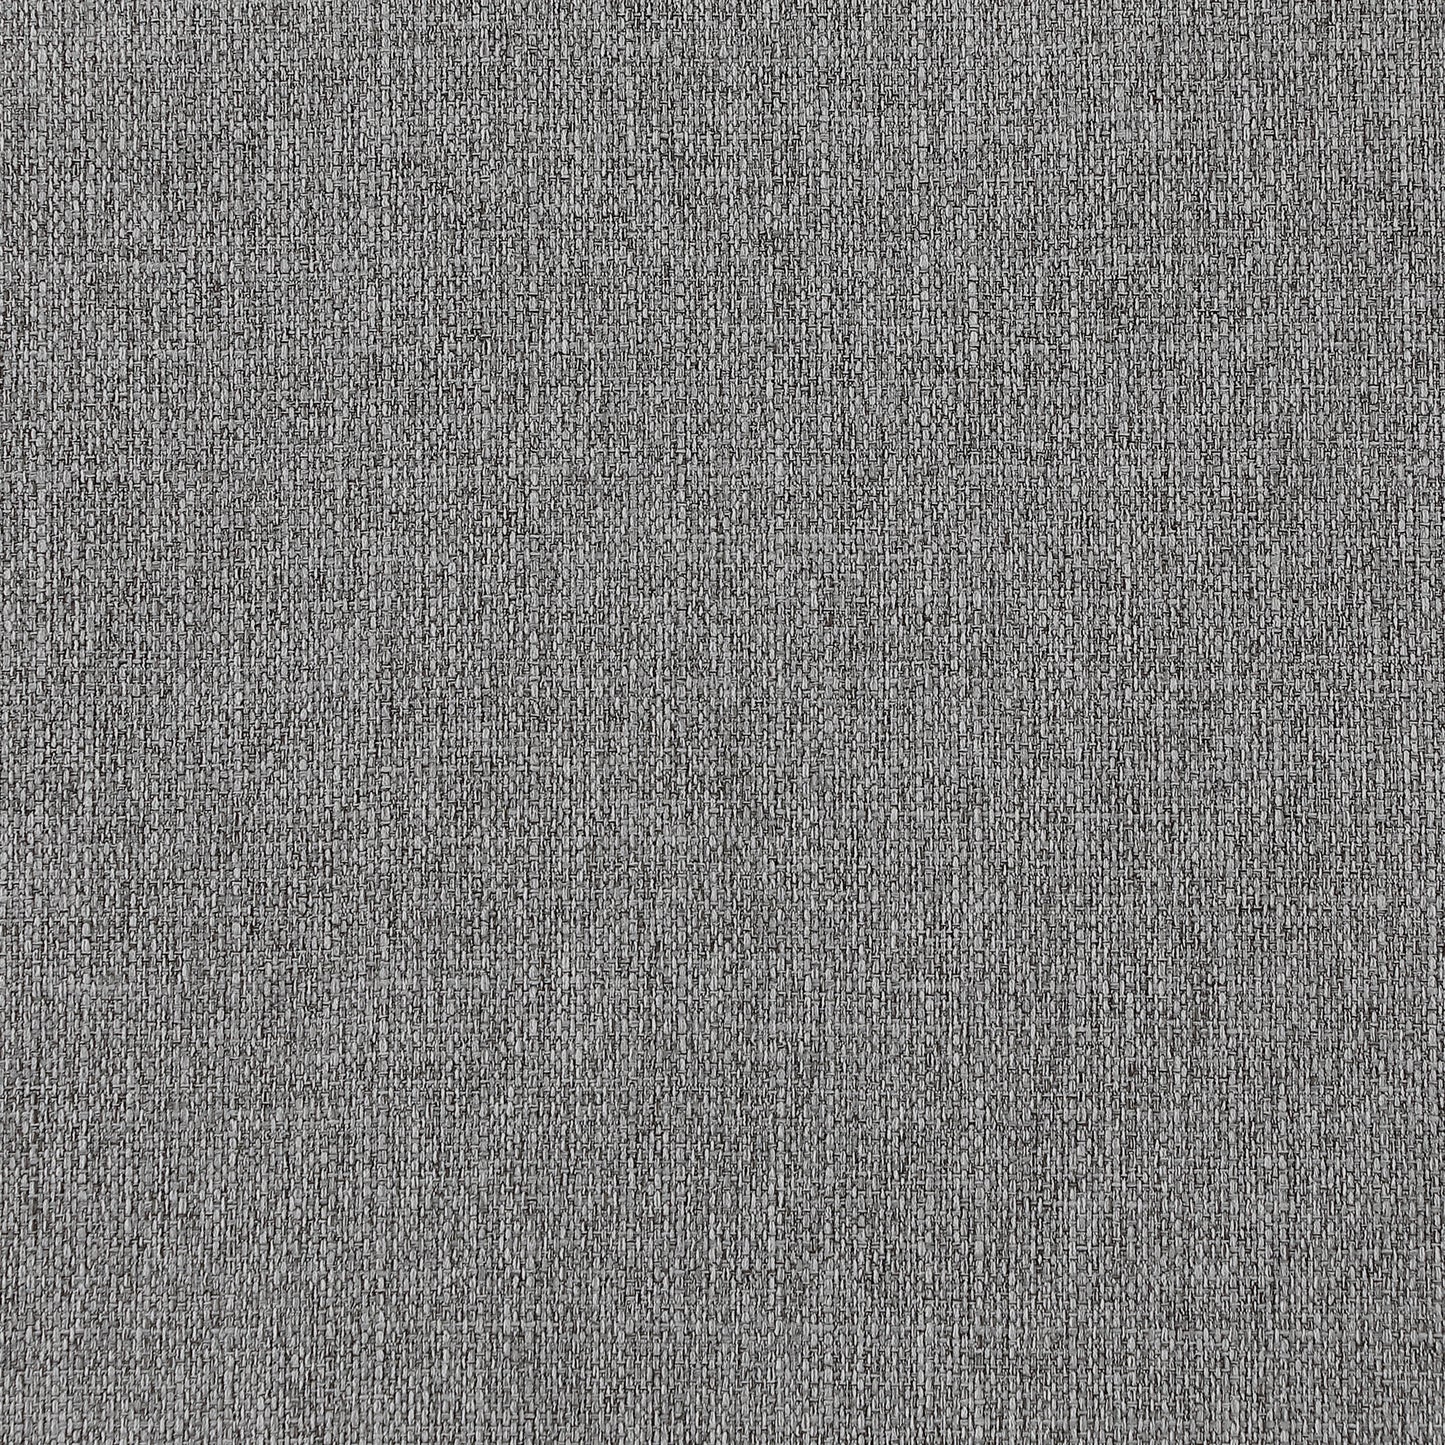 winston grey durable linen textured modular sofa s80a